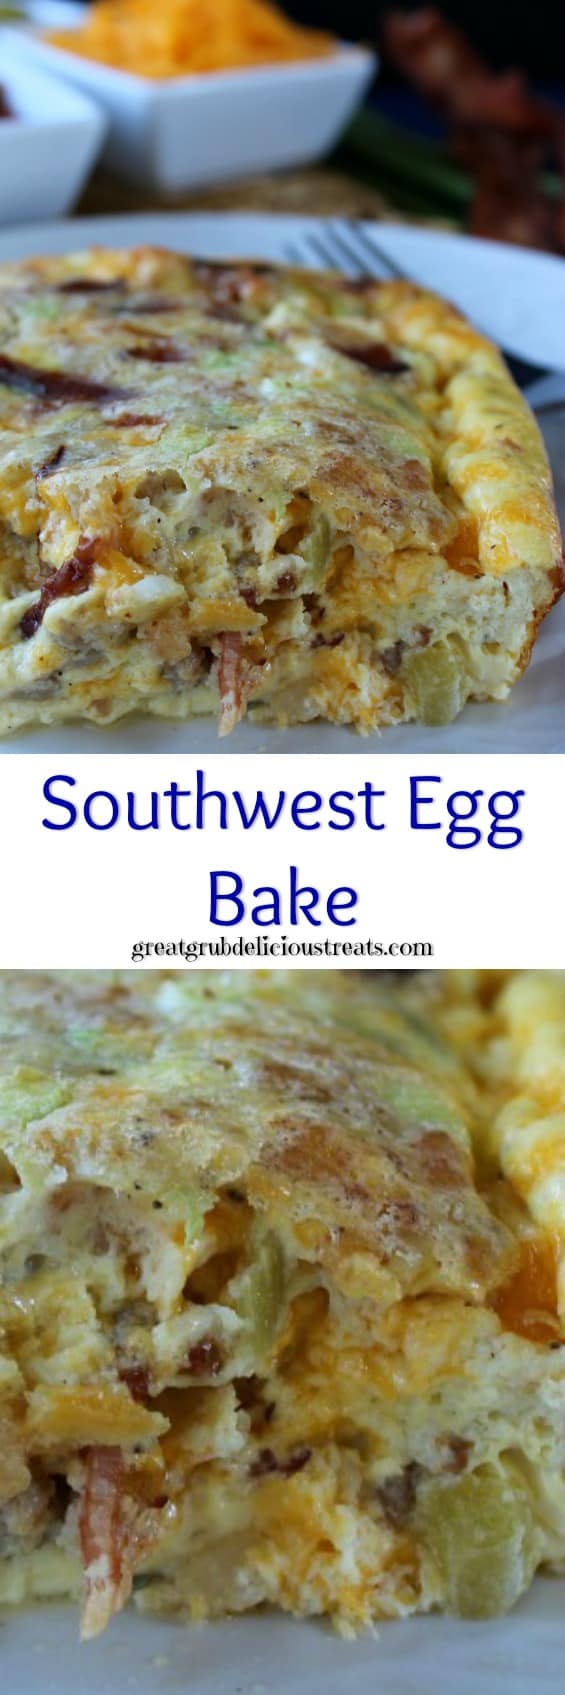 Southwest Egg Bake